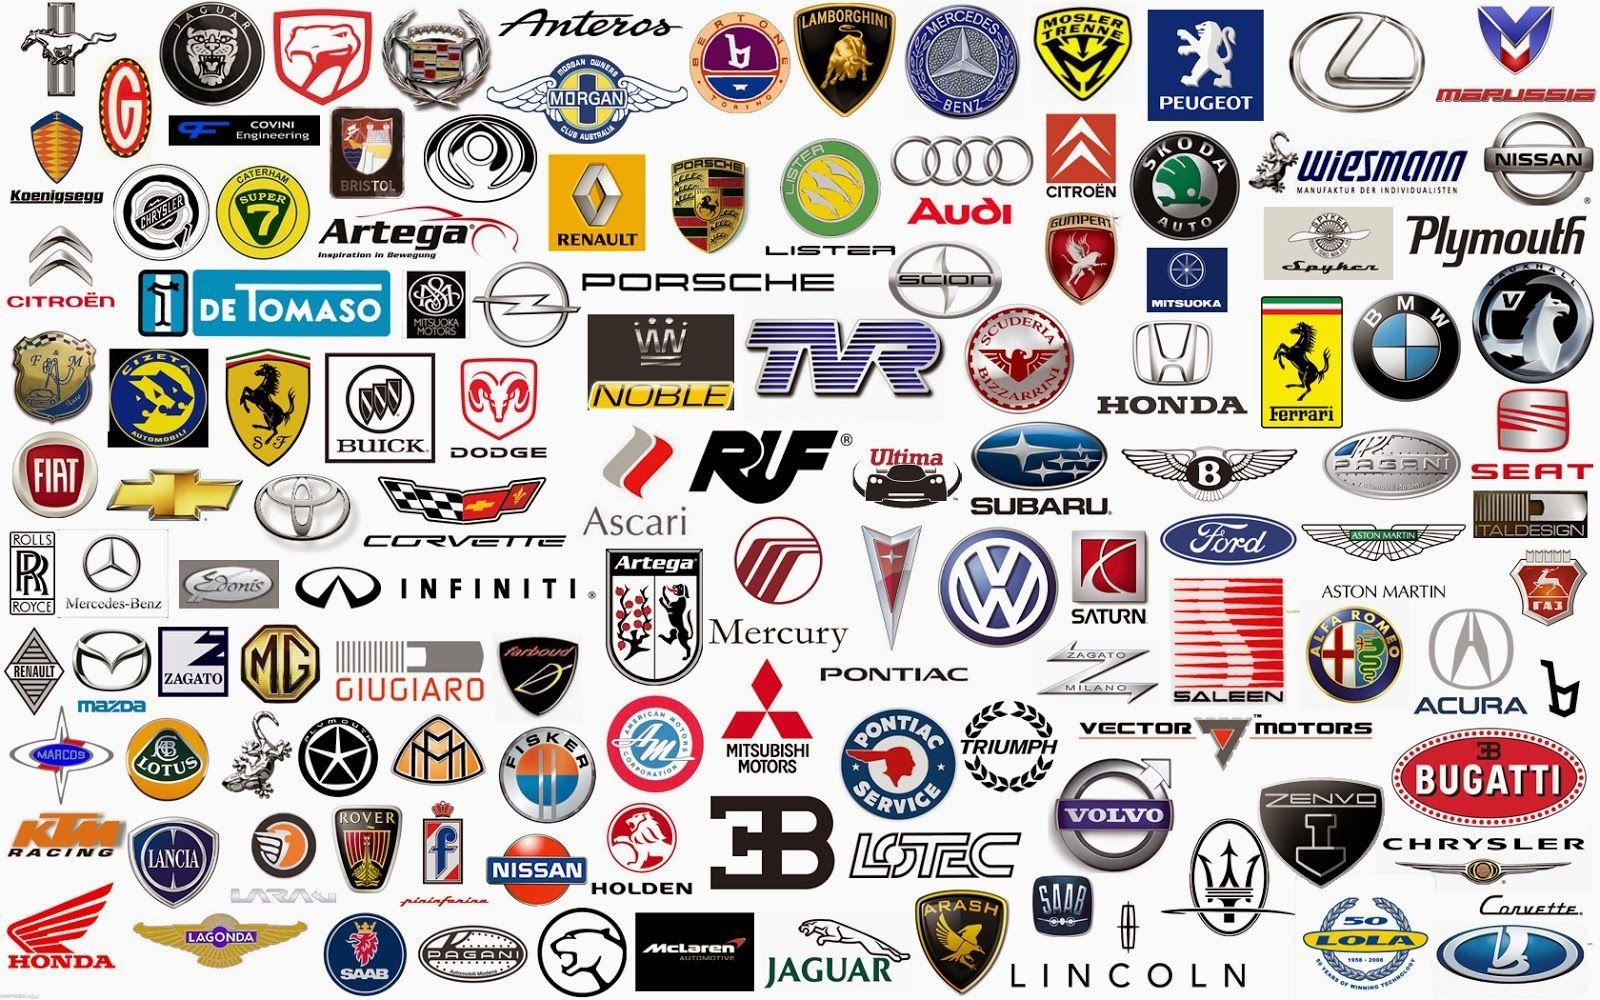 Car Company with Lion Logo - Auto Logos Image: Famous Car Company Logos